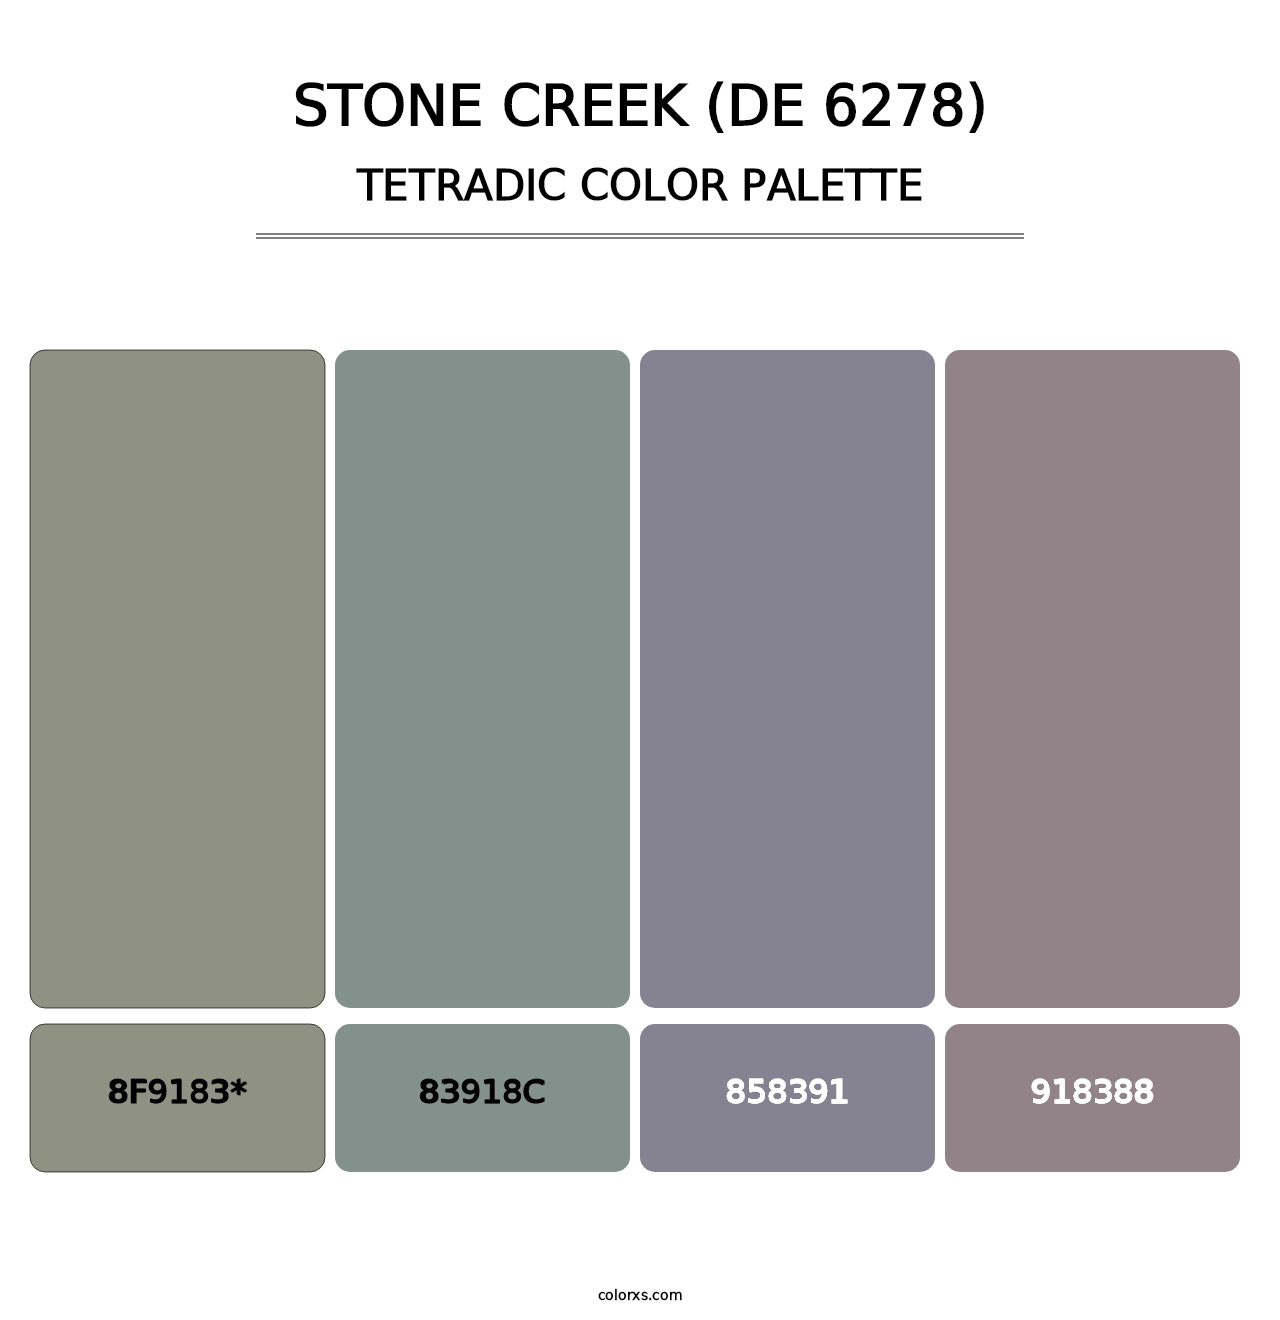 Stone Creek (DE 6278) - Tetradic Color Palette